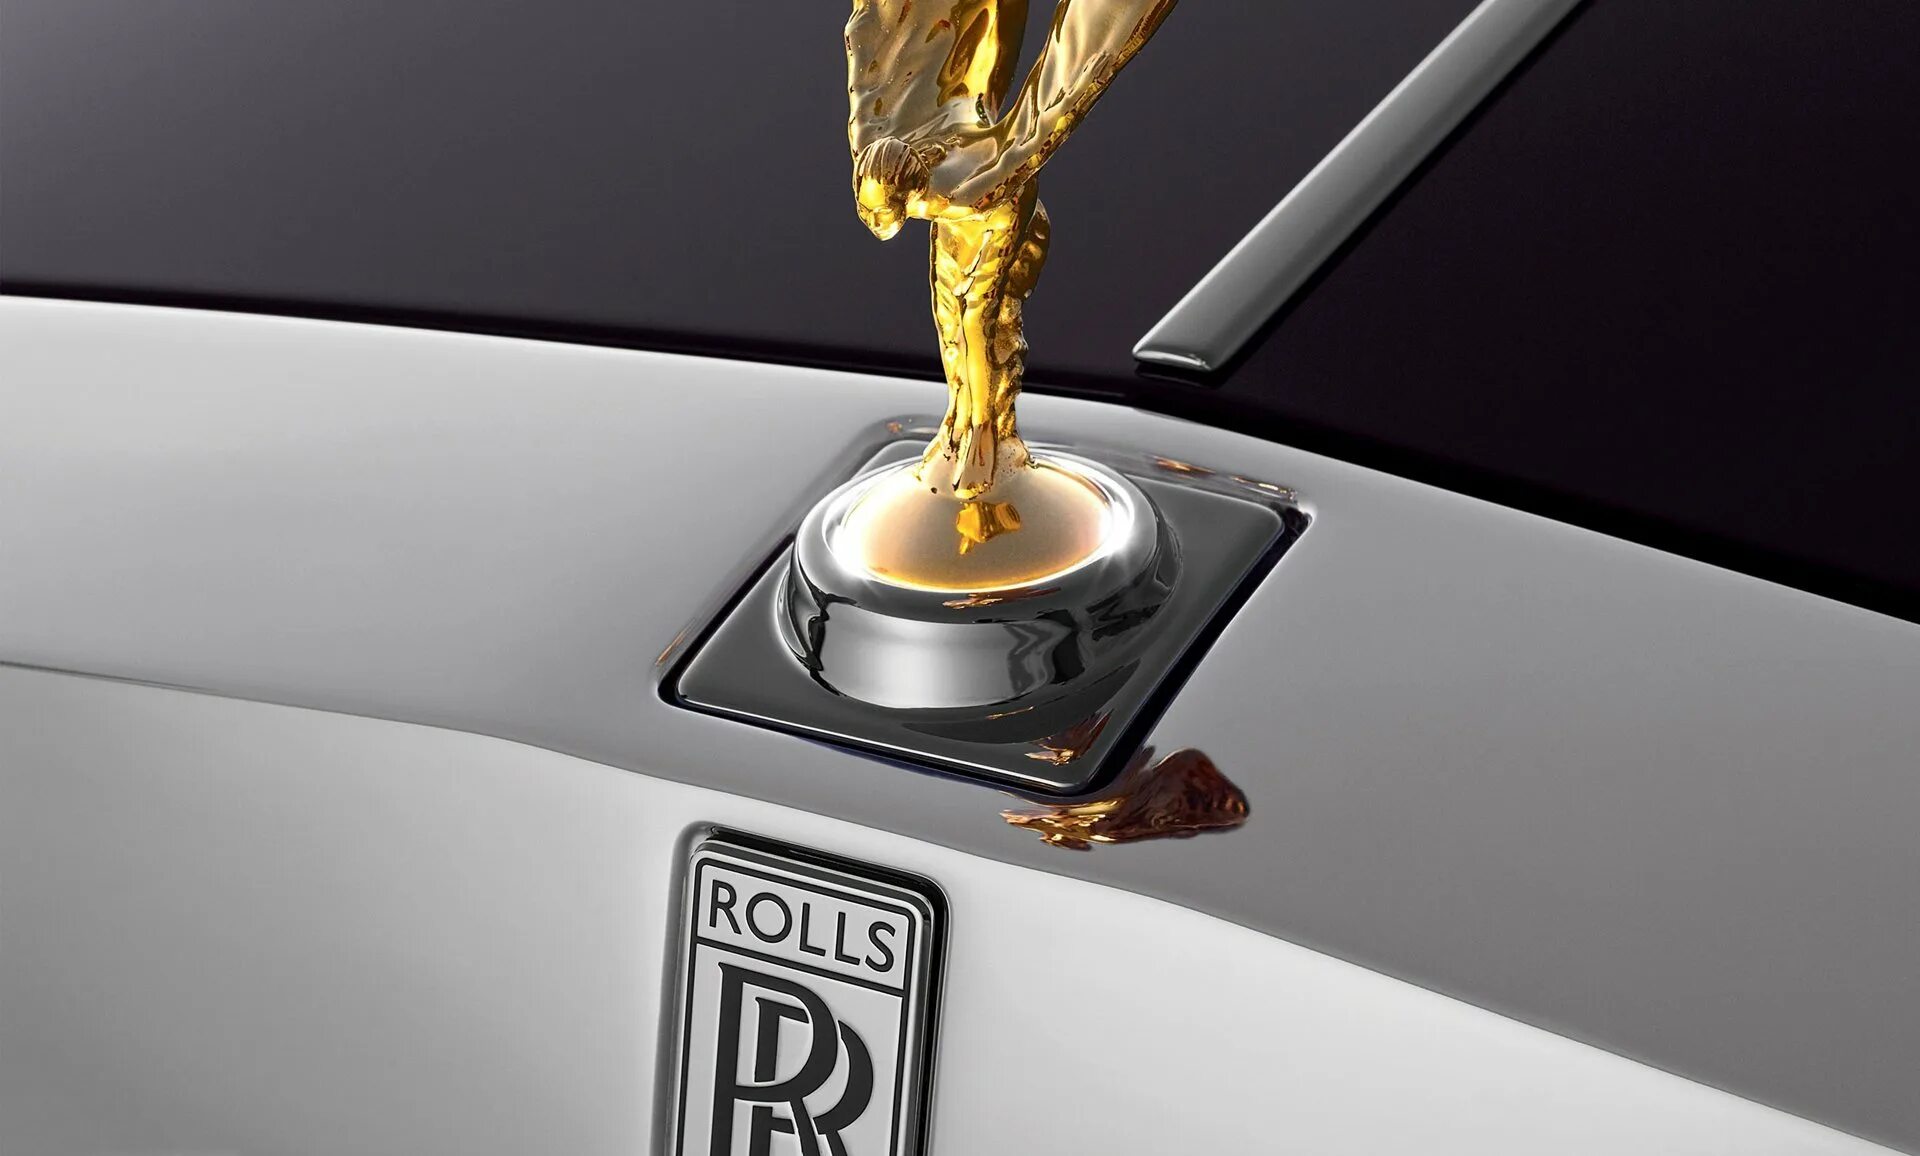 Значки на капоте машины. Rolls Royce дух экстаза. Роллс Ройс Фантом значок. Дух экстаза на Rolls Royce Phantom. Rolls Royce шильдик.